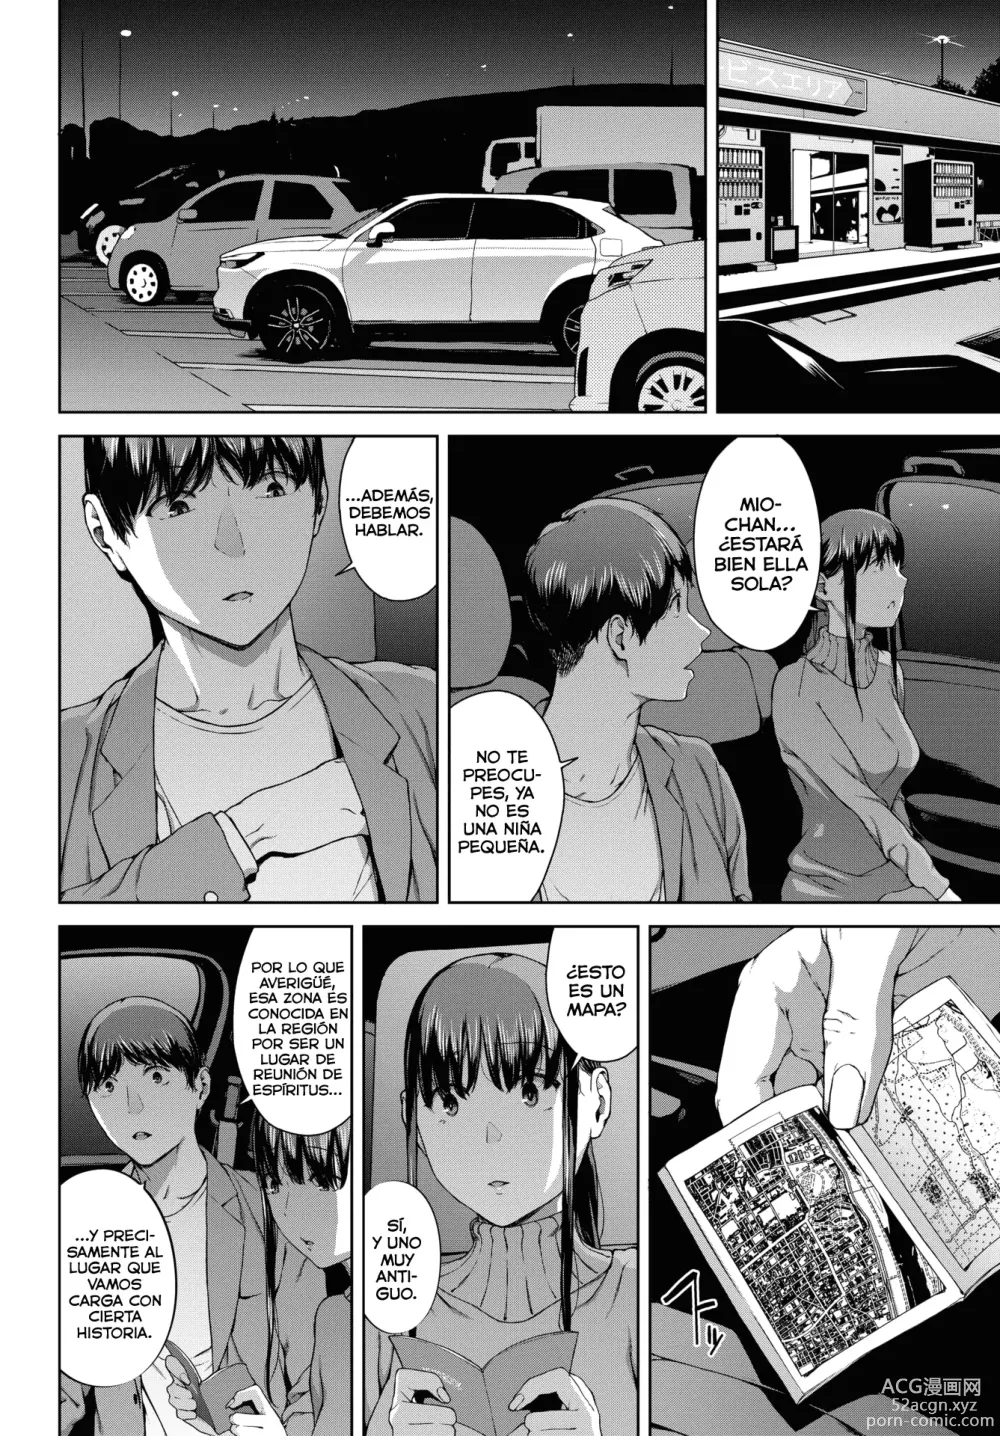 Page 4 of manga Yoriko 4